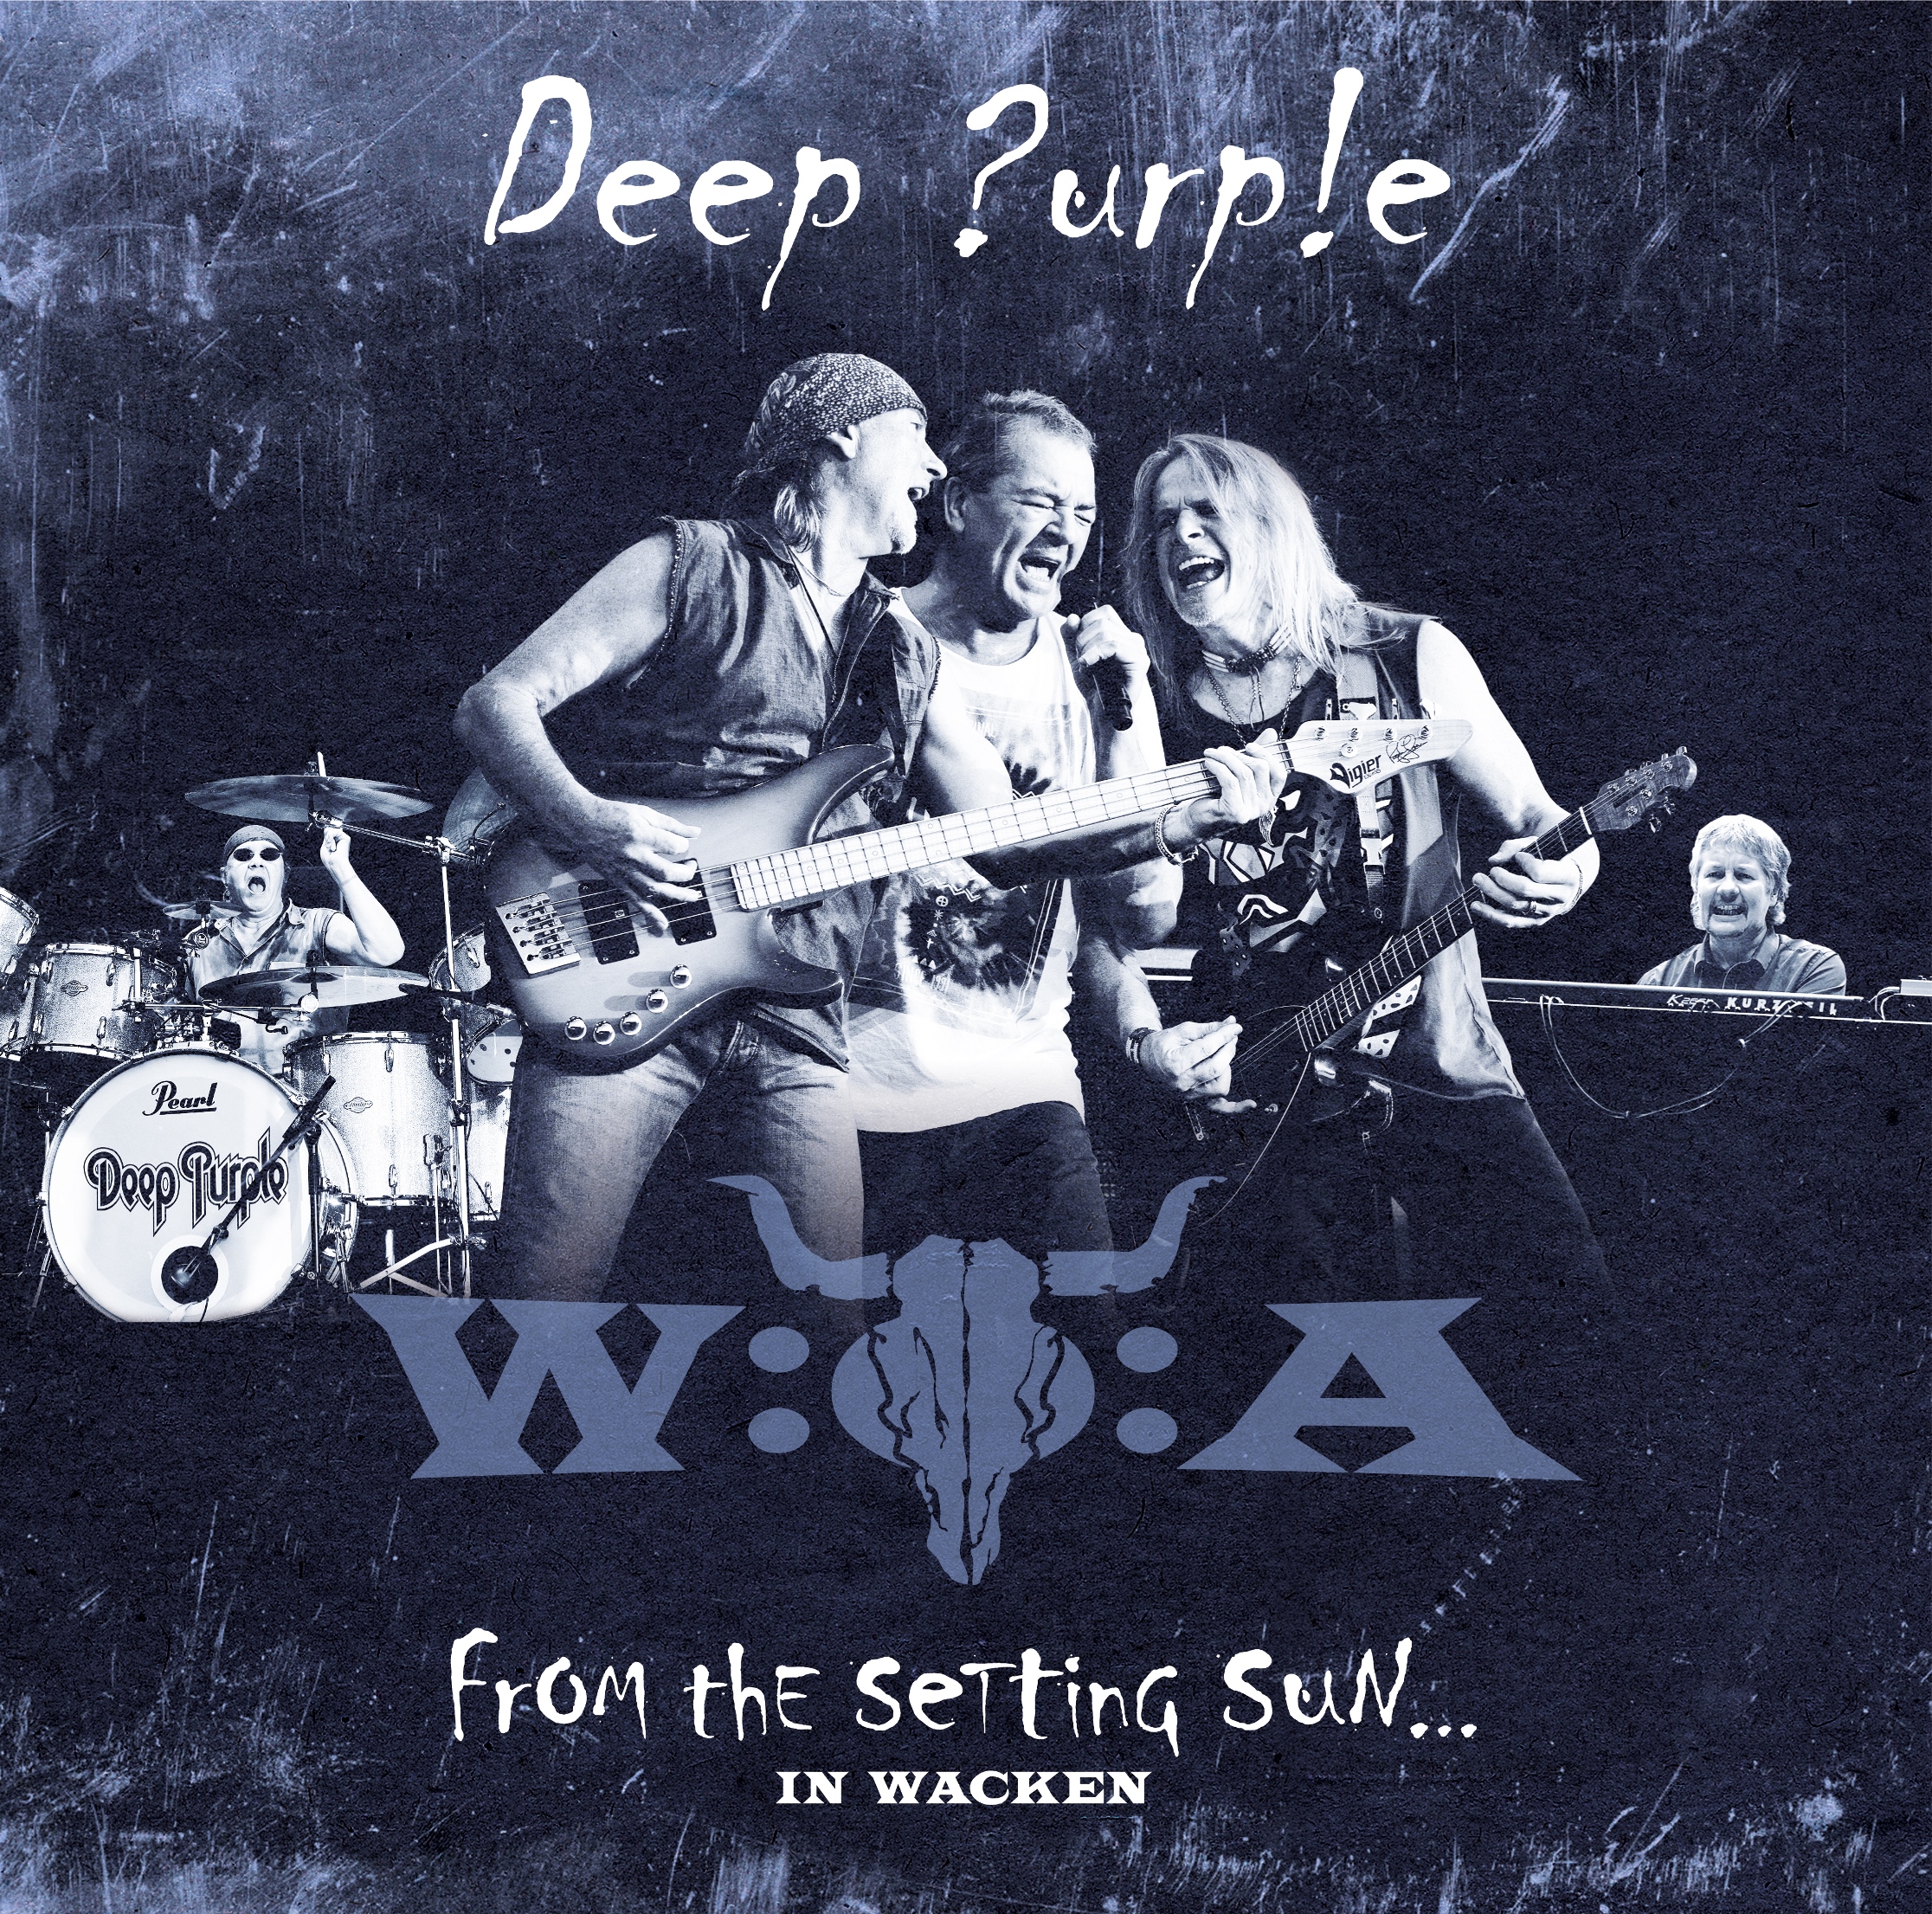 Deep Purple - From The Setting Sun... (In Wacken) - 2xCD